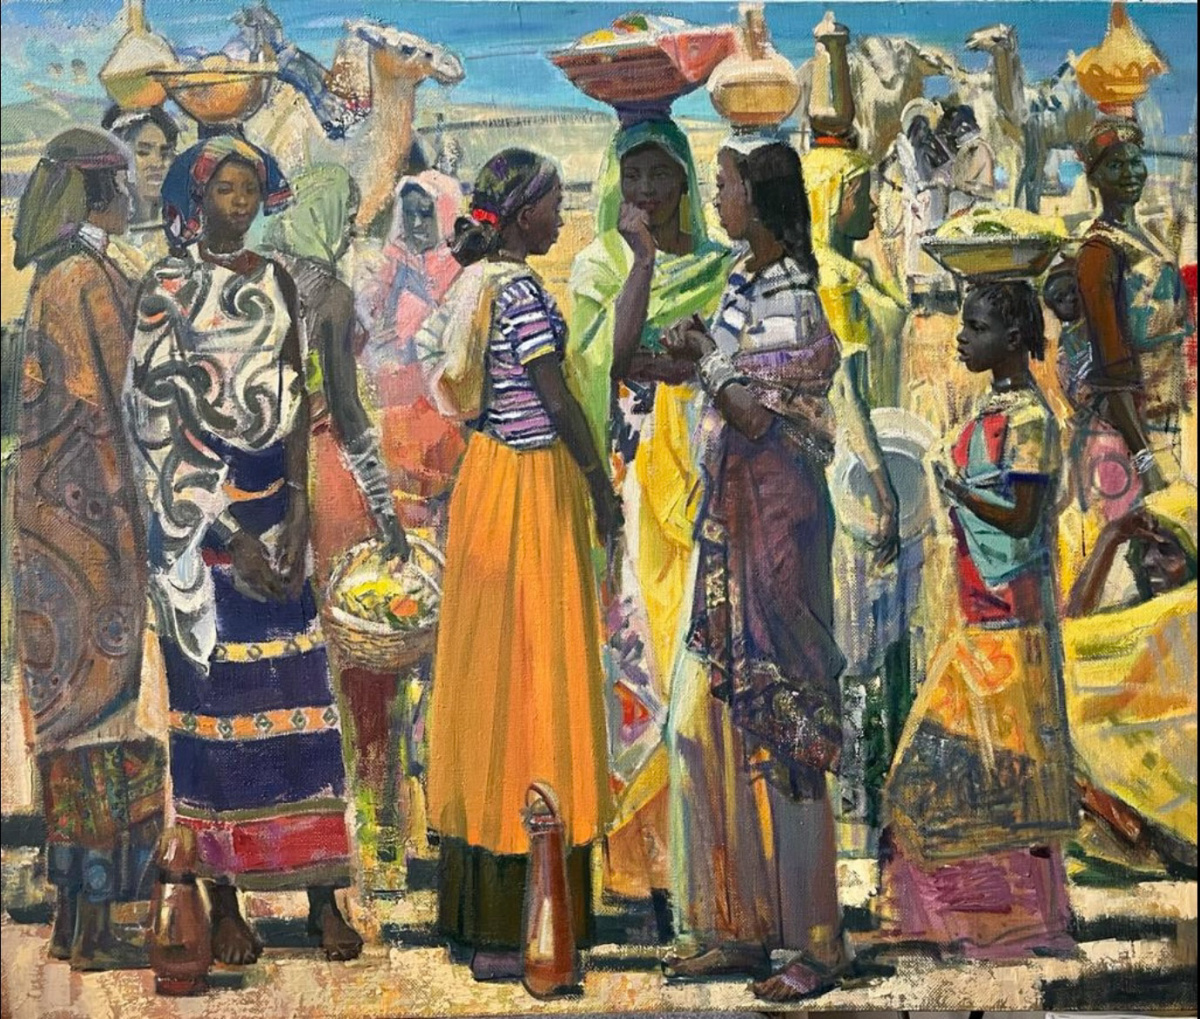 «Ацбеха Негга Тесфае работает в реалистической манере, яркие, жизнерадостные и сочные краски отражают африканский колорит, будто солнце внутри подсвечивает картины», — так говорят искусствоведы о творчестве нашего героя.